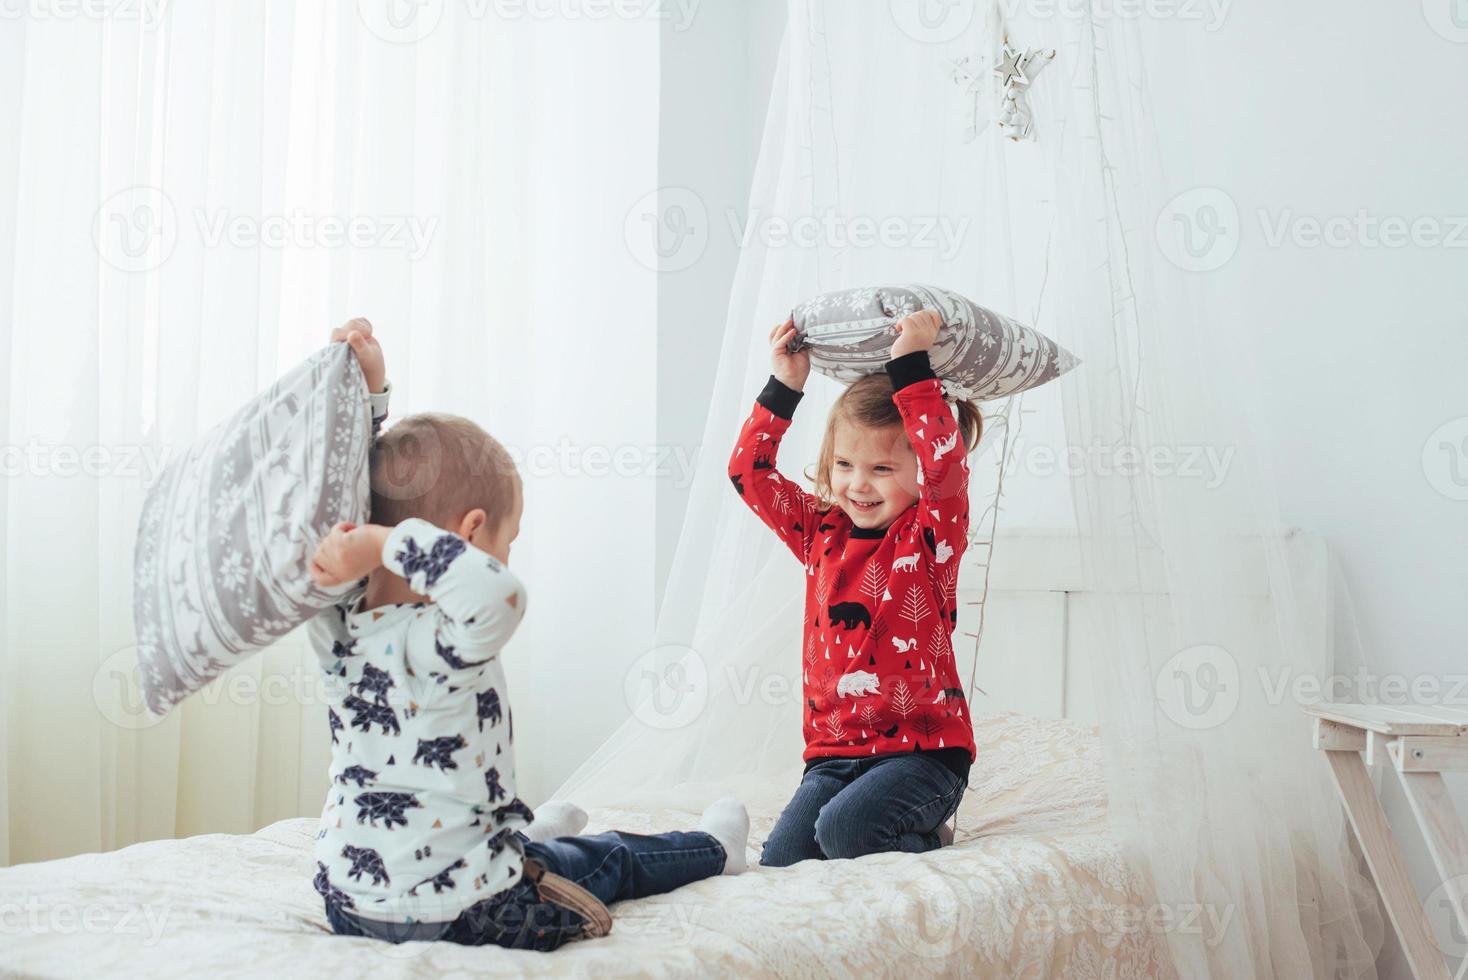 enfant en pyjama doux et chaud jouant au lit photo